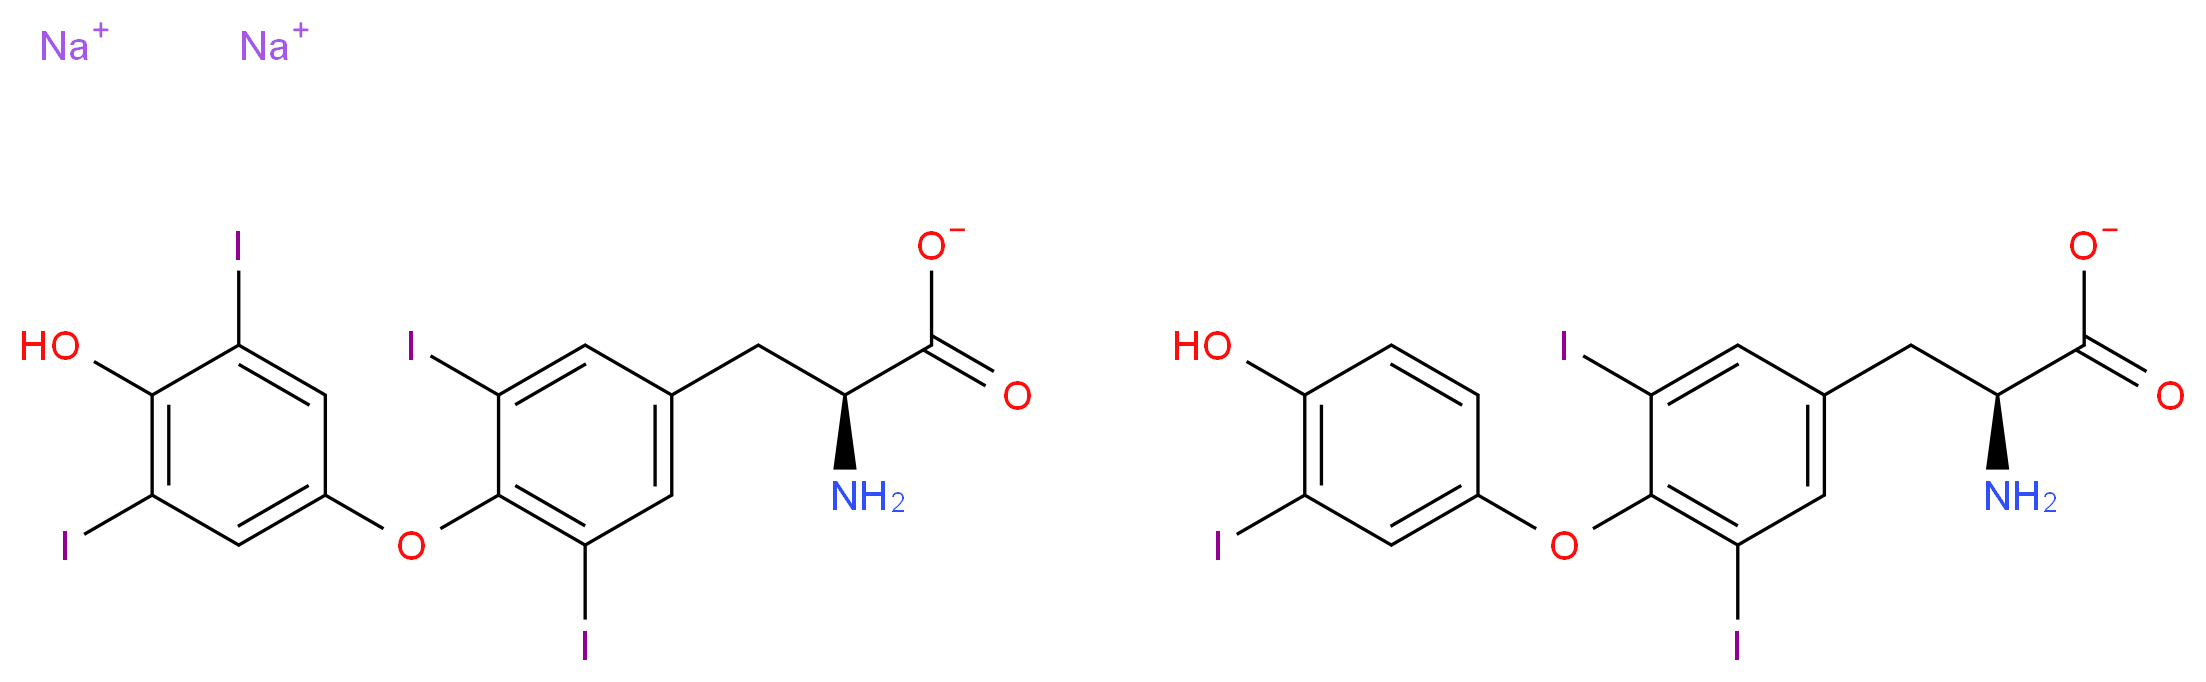 8065-29-0 molecular structure